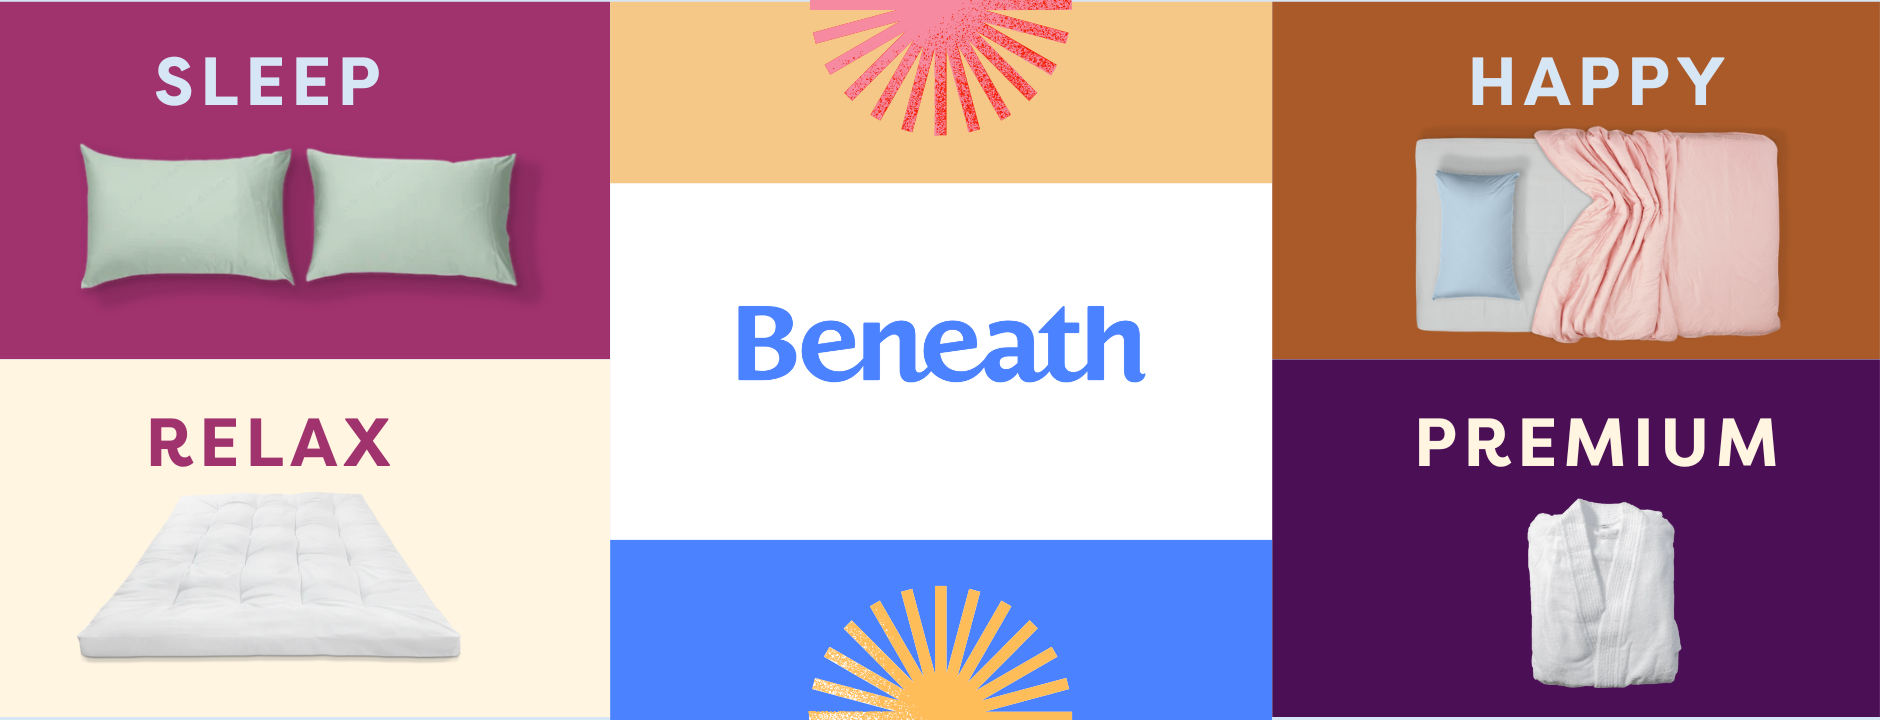 Beneath.